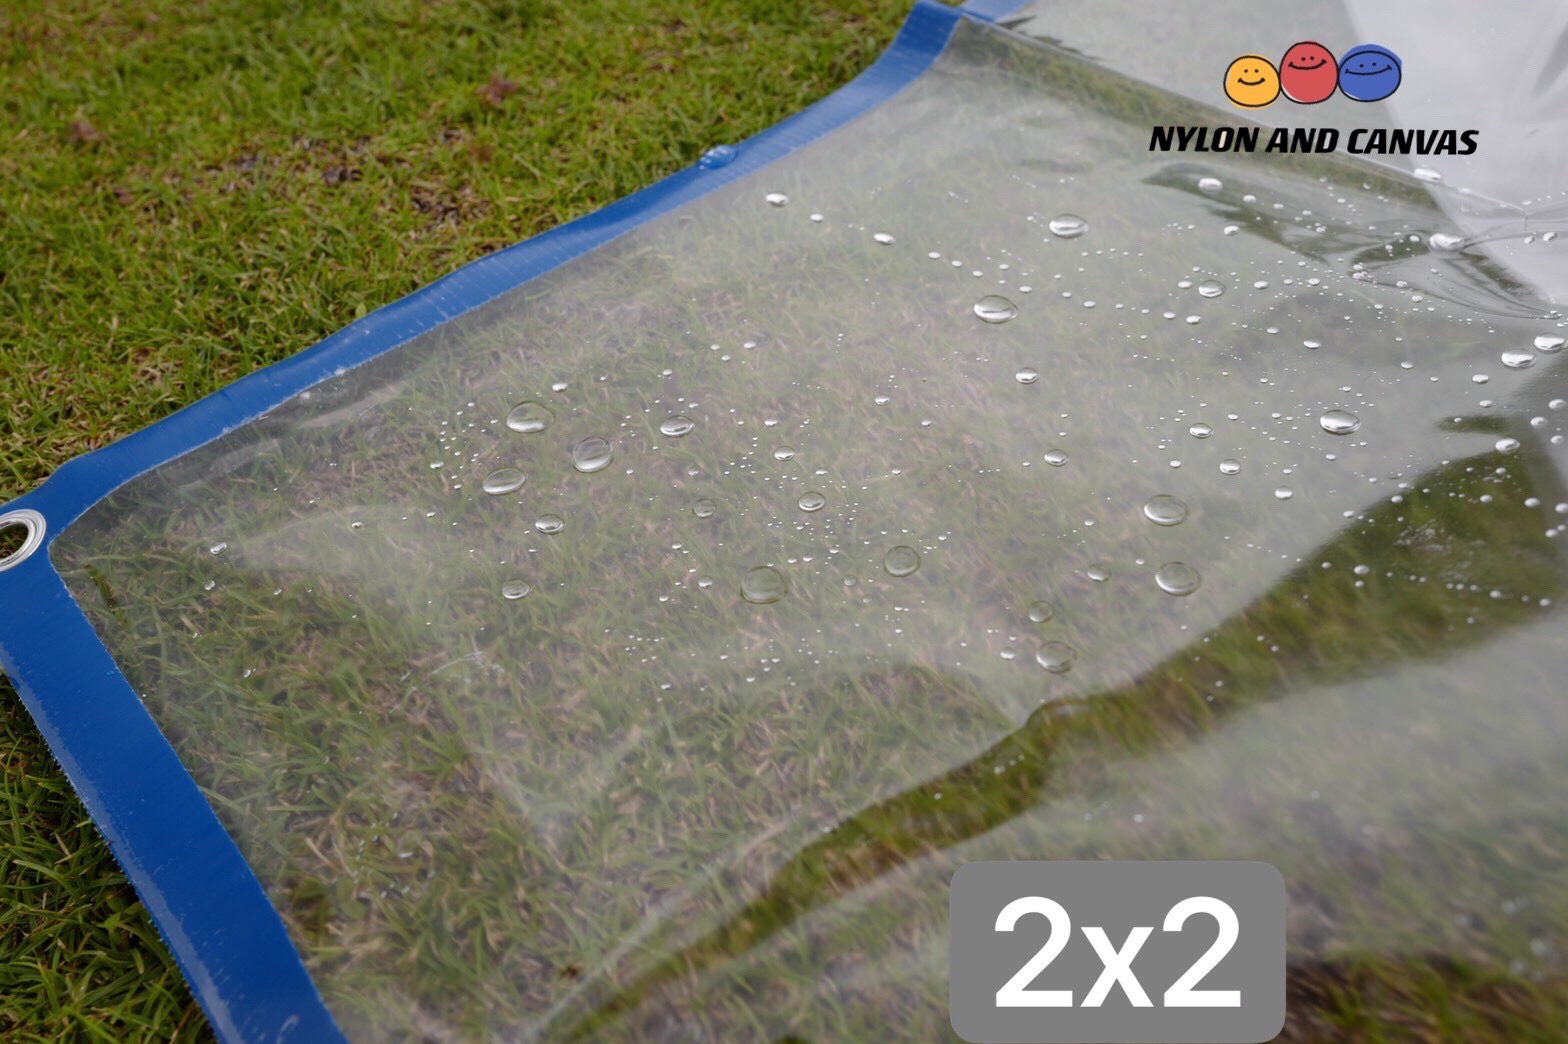 พลาสติกใส ผ้าใบใส ผ้ายางใส Clear plastic sheet PVC ใส เกรดAAA คุณภาพดี ขนาด 2x2 2x3 2x4 ทนแดด/ทนฝน ไม่รั่วน้ำ น้ำหนักเบา มีรูร้อยเชือกรอบผืนพร้อมใช้งาน